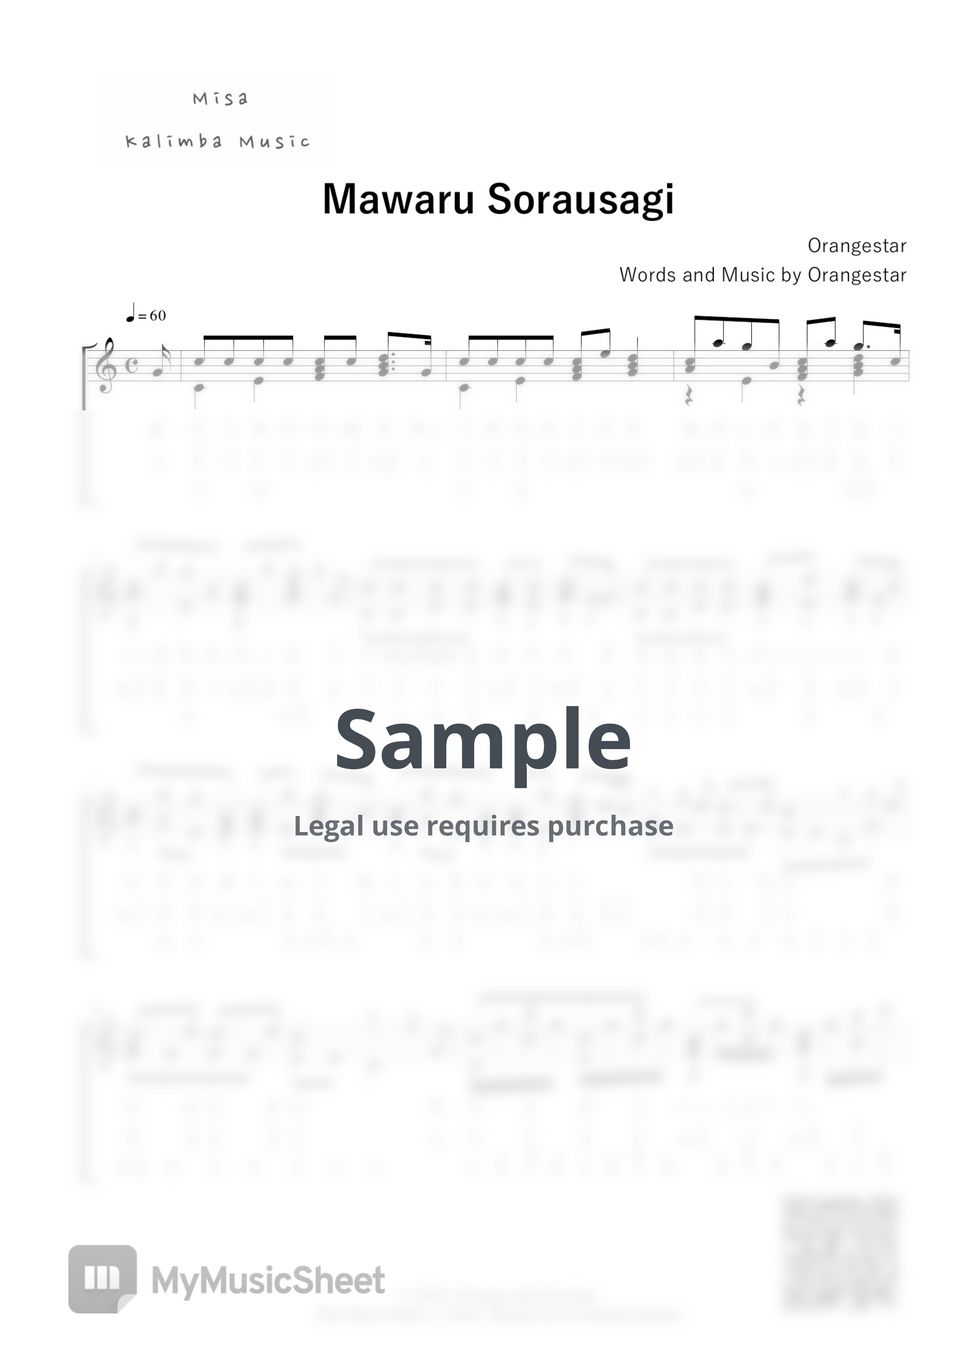 Orangestar - Mawaru Sora Usagi / Number Notation by Misa / Kalimba Music